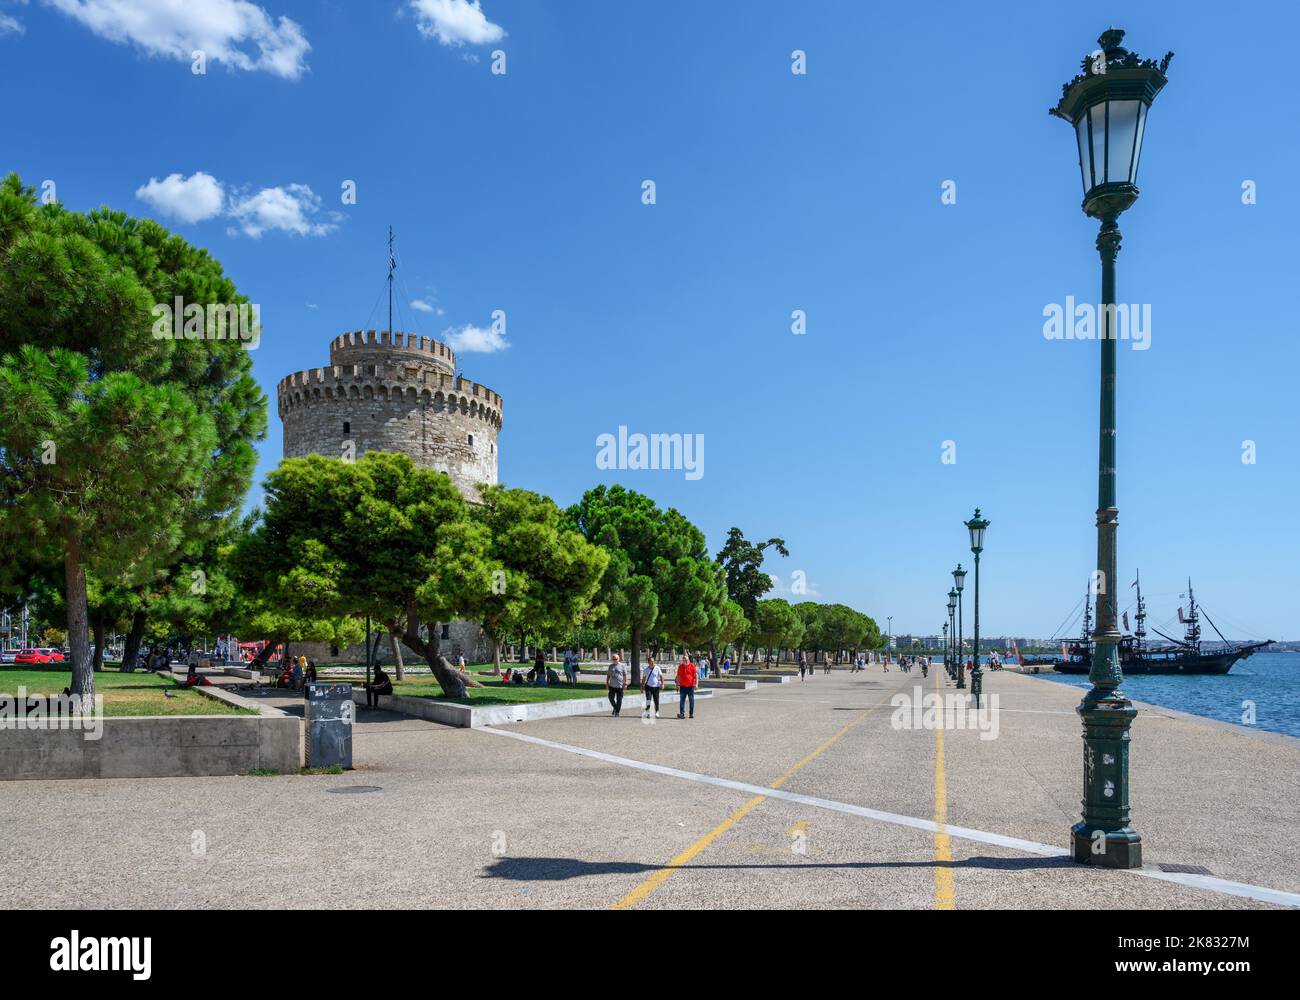 Thessaloniki. Seafront promenade and the White Tower (Lefkos Pyrgos), Nikis Avenue, Thessaloniki, Macedonia, Greece Stock Photo